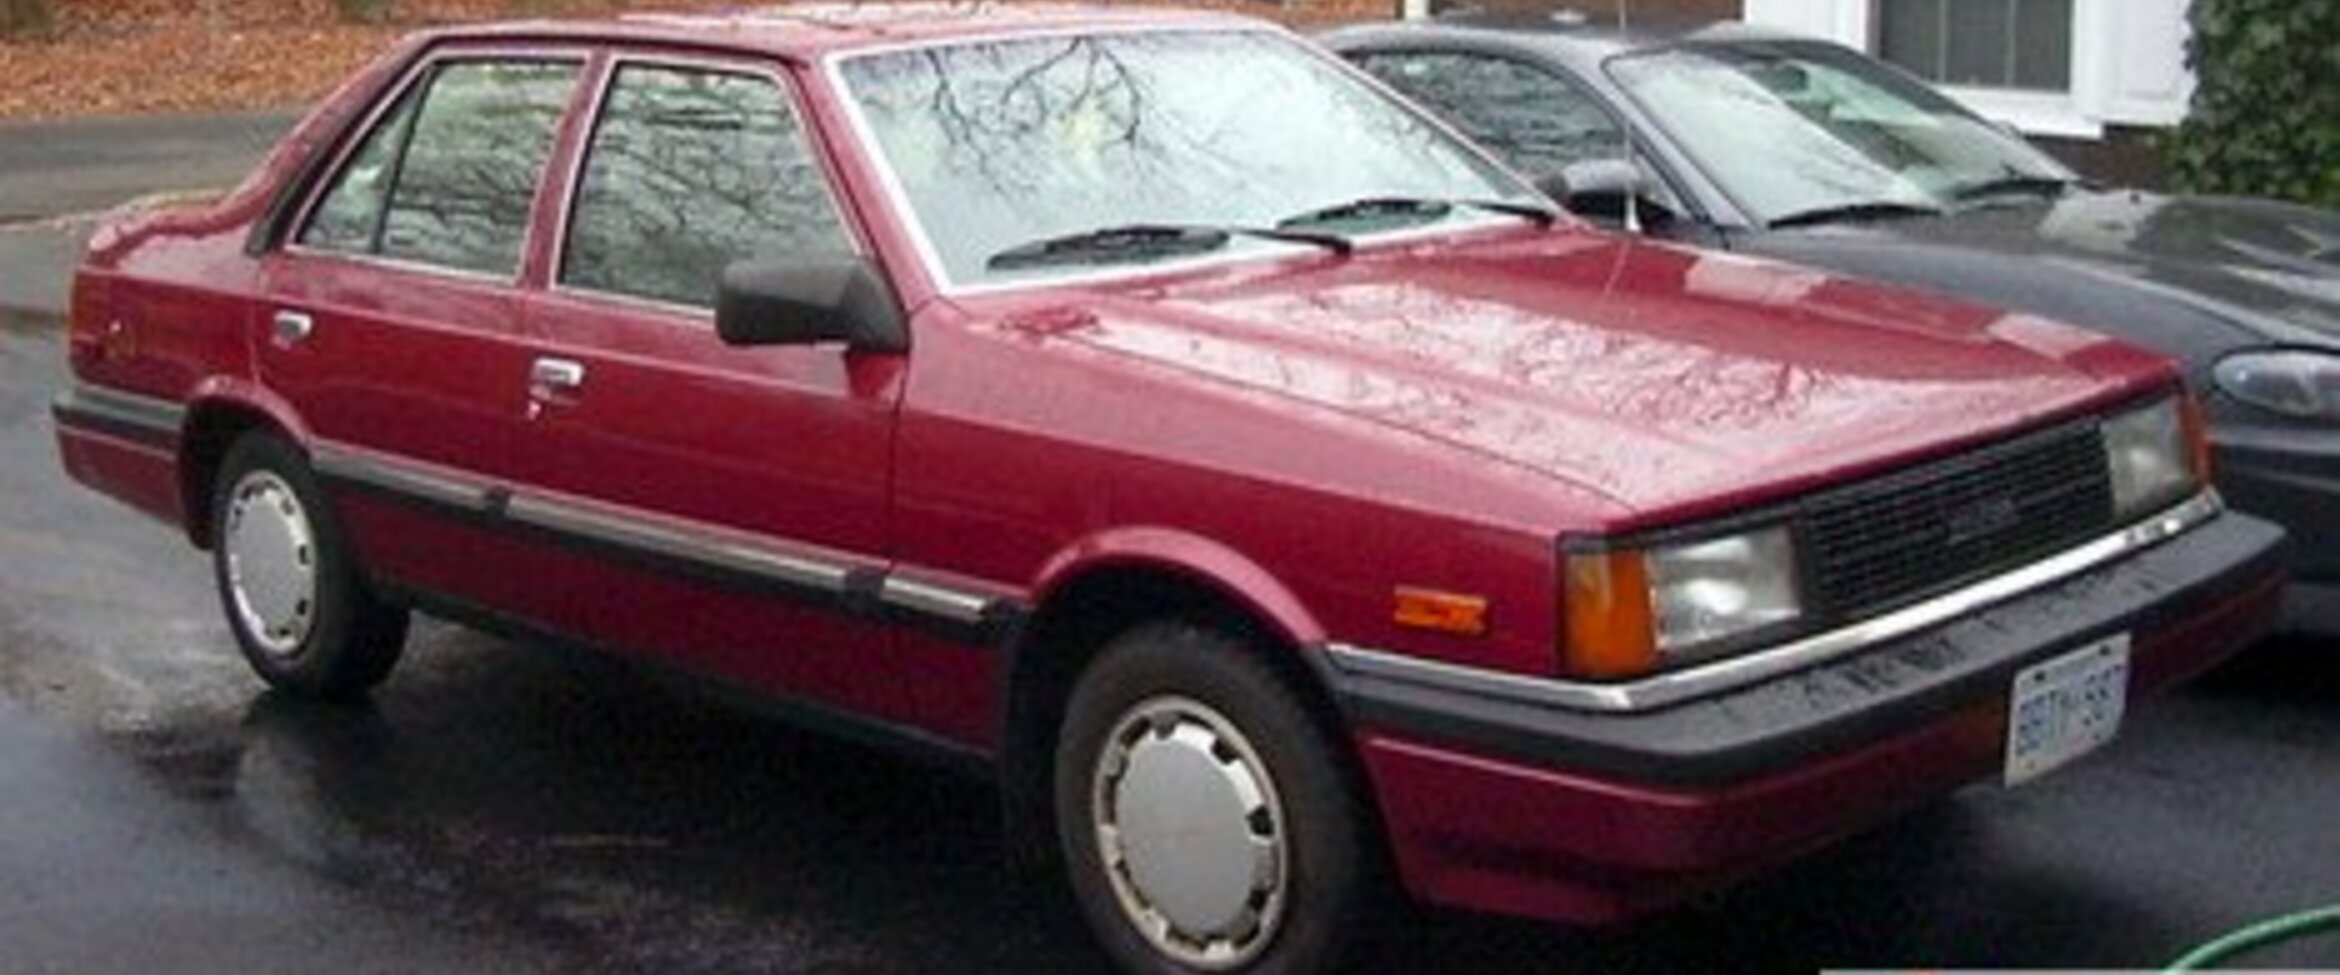 Hyundai Stellar 1.4 (92 Hp) 1983, 1984, 1985, 1986, 1987, 1988, 1989, 1990, 1991, 1992, 1993 